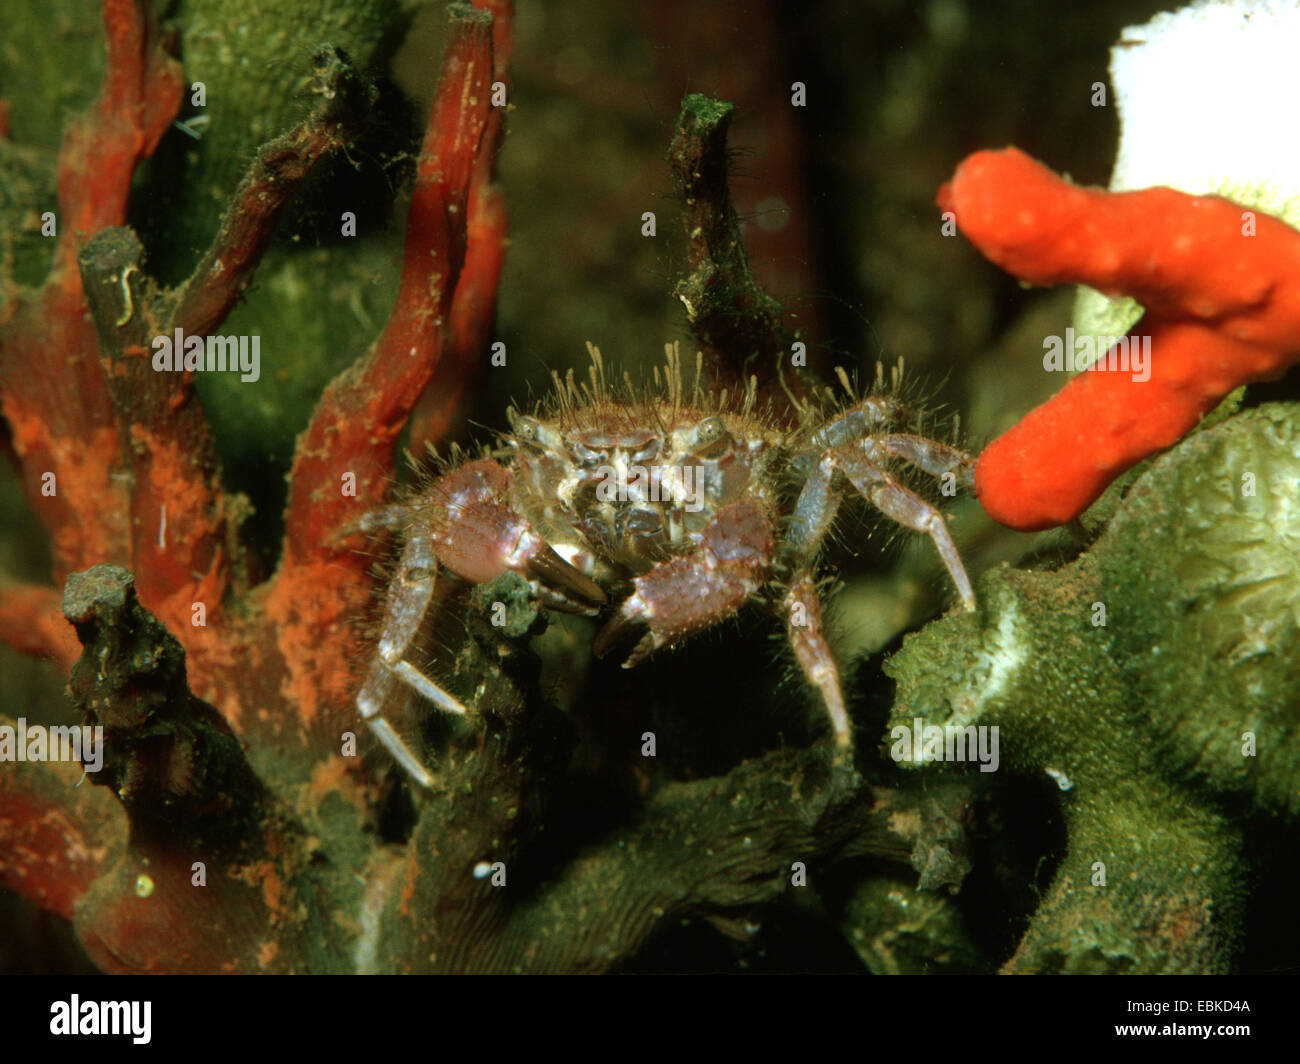 hairy crab, bristly xanthid crab (Pilumnus hirtellus), in aquarium Stock Photo